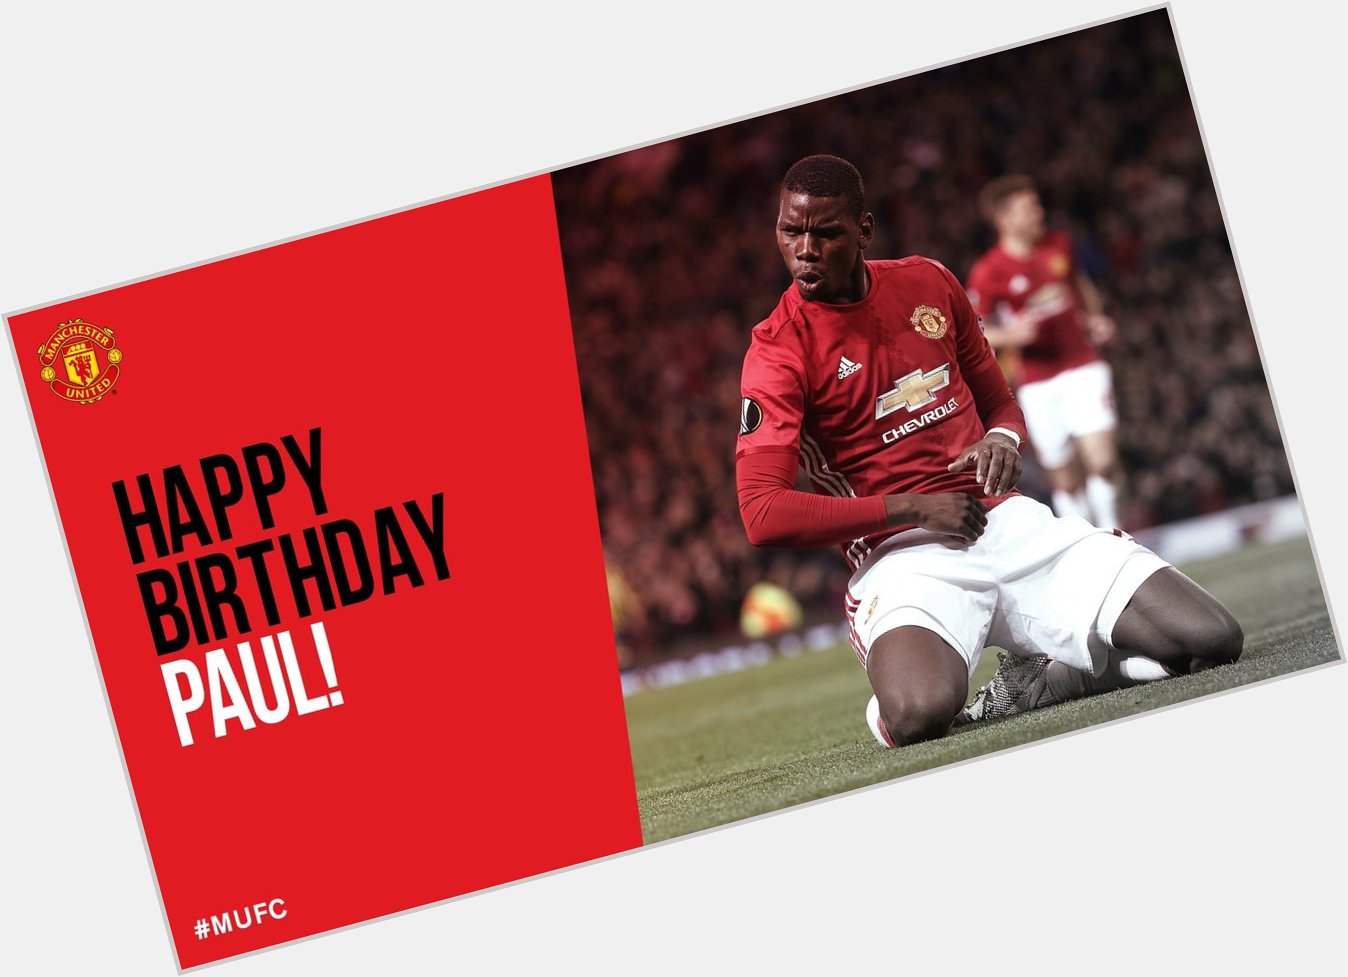 We just say make we wish Paul Pogba Happy Birthday, E don turn 24. 